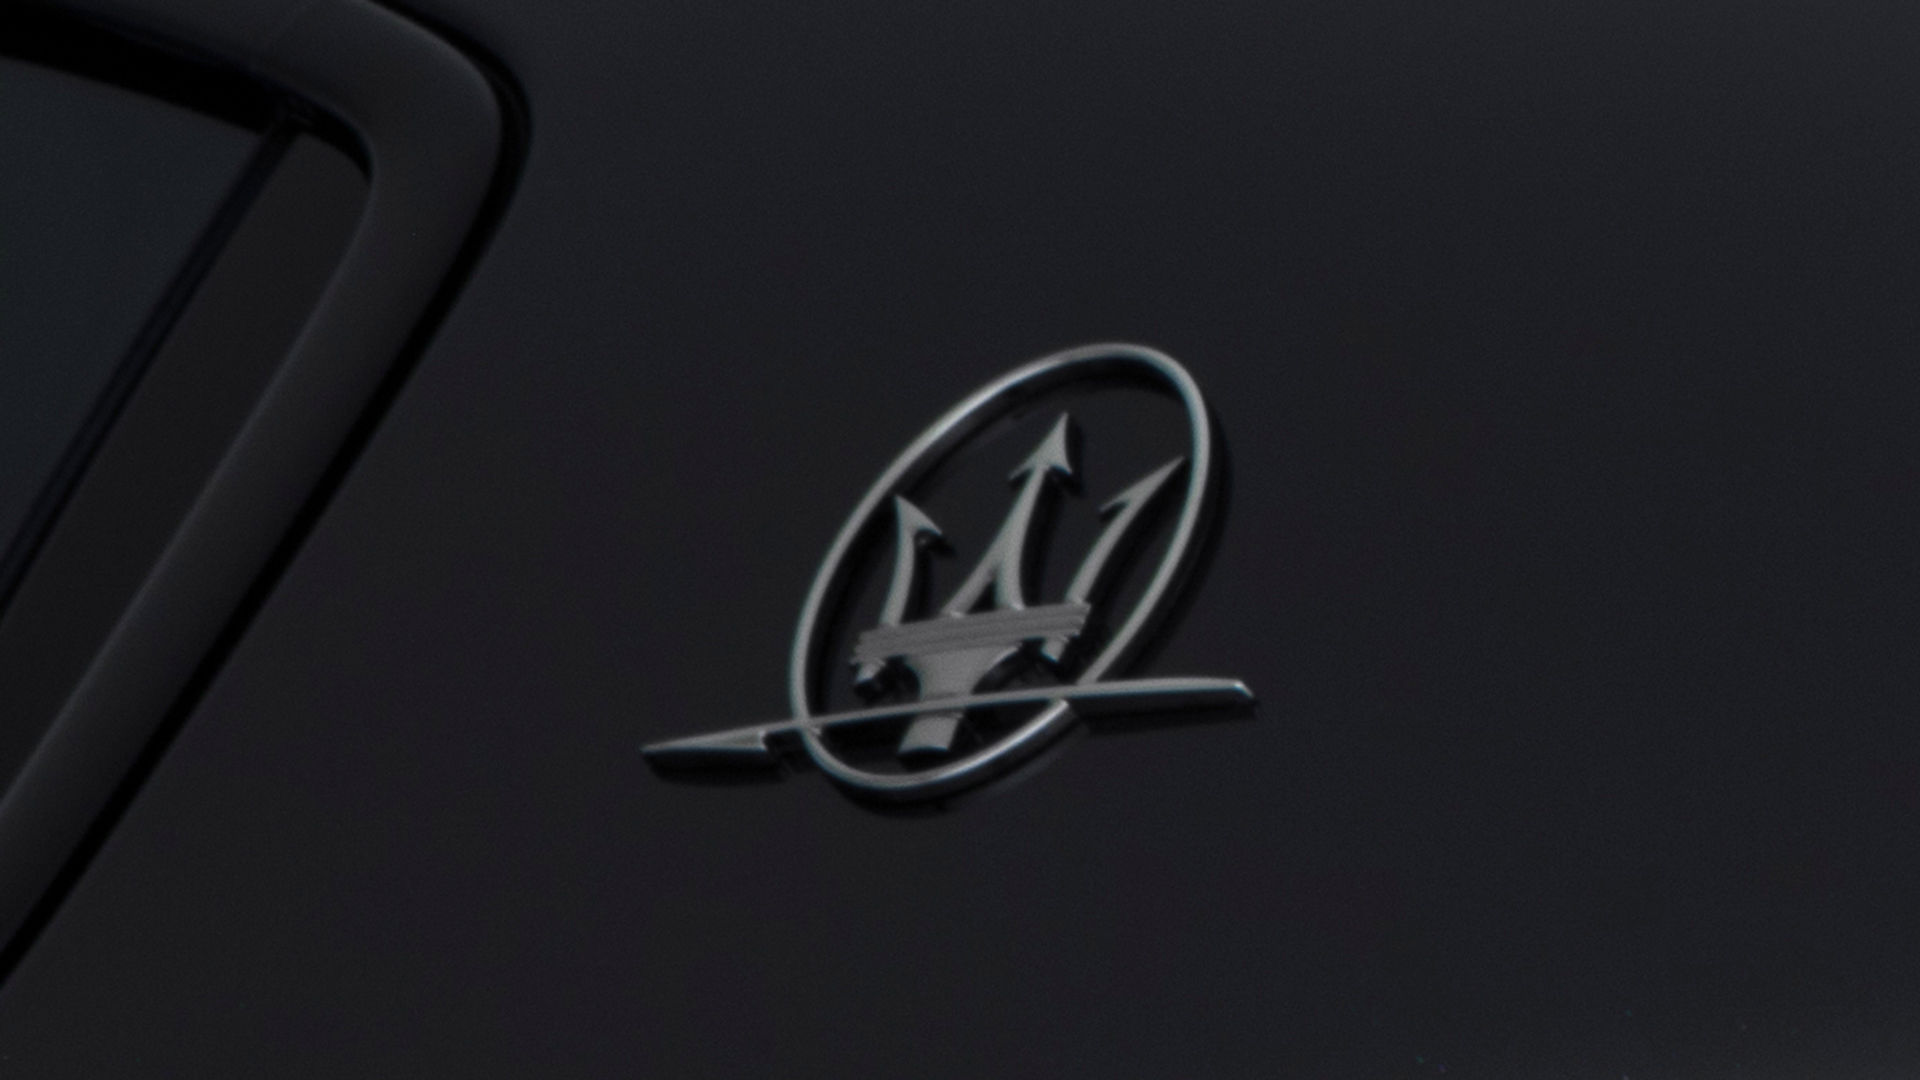 Detailansicht Maserati Dreizack Logo - Ghibli Geschichte